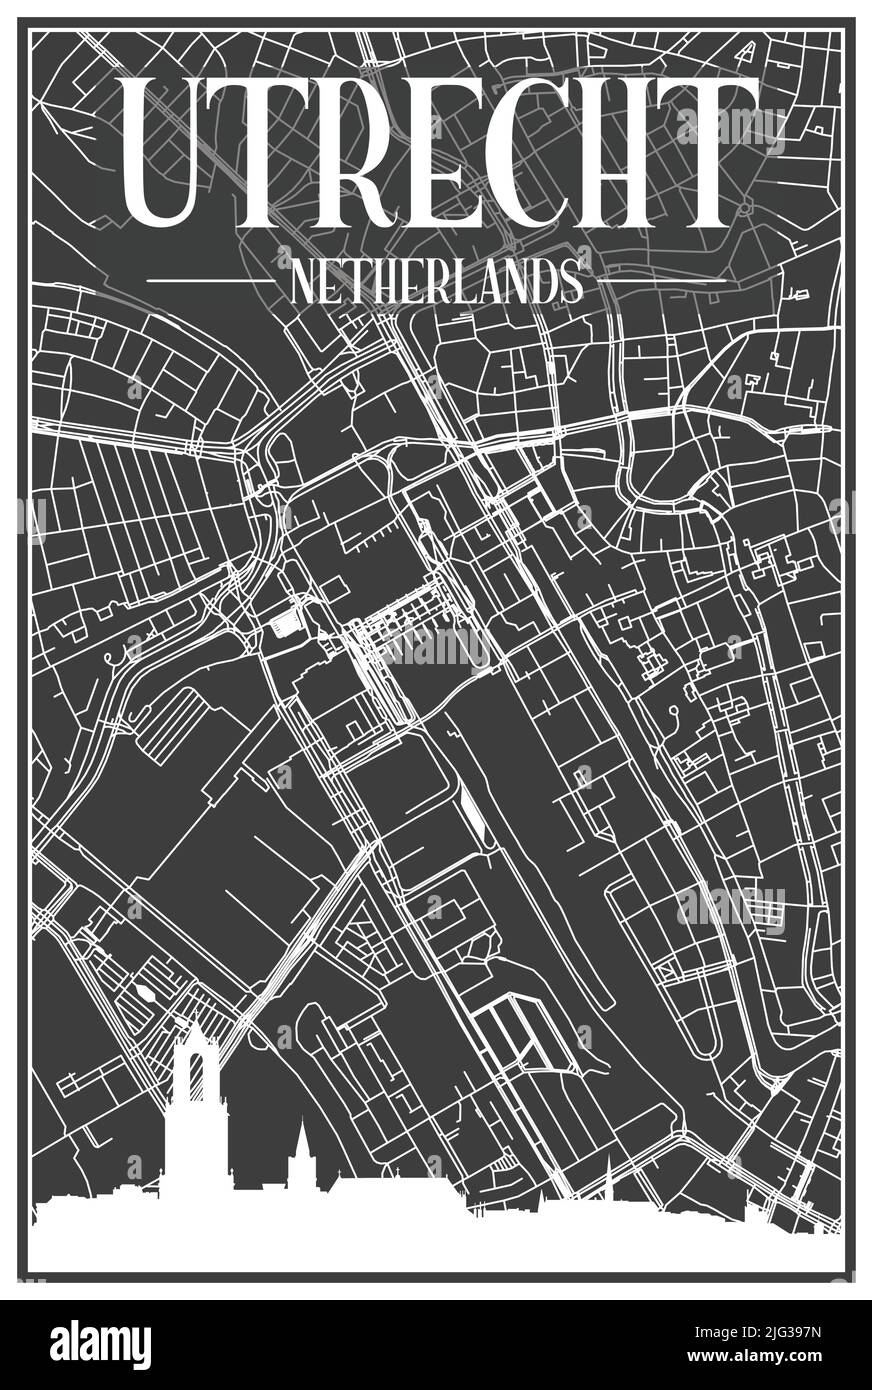 Affiche de la ville imprimée en noir avec vue panoramique et rues dessinées à la main sur fond gris foncé du centre-ville D'UTRECHT, PAYS-BAS Illustration de Vecteur